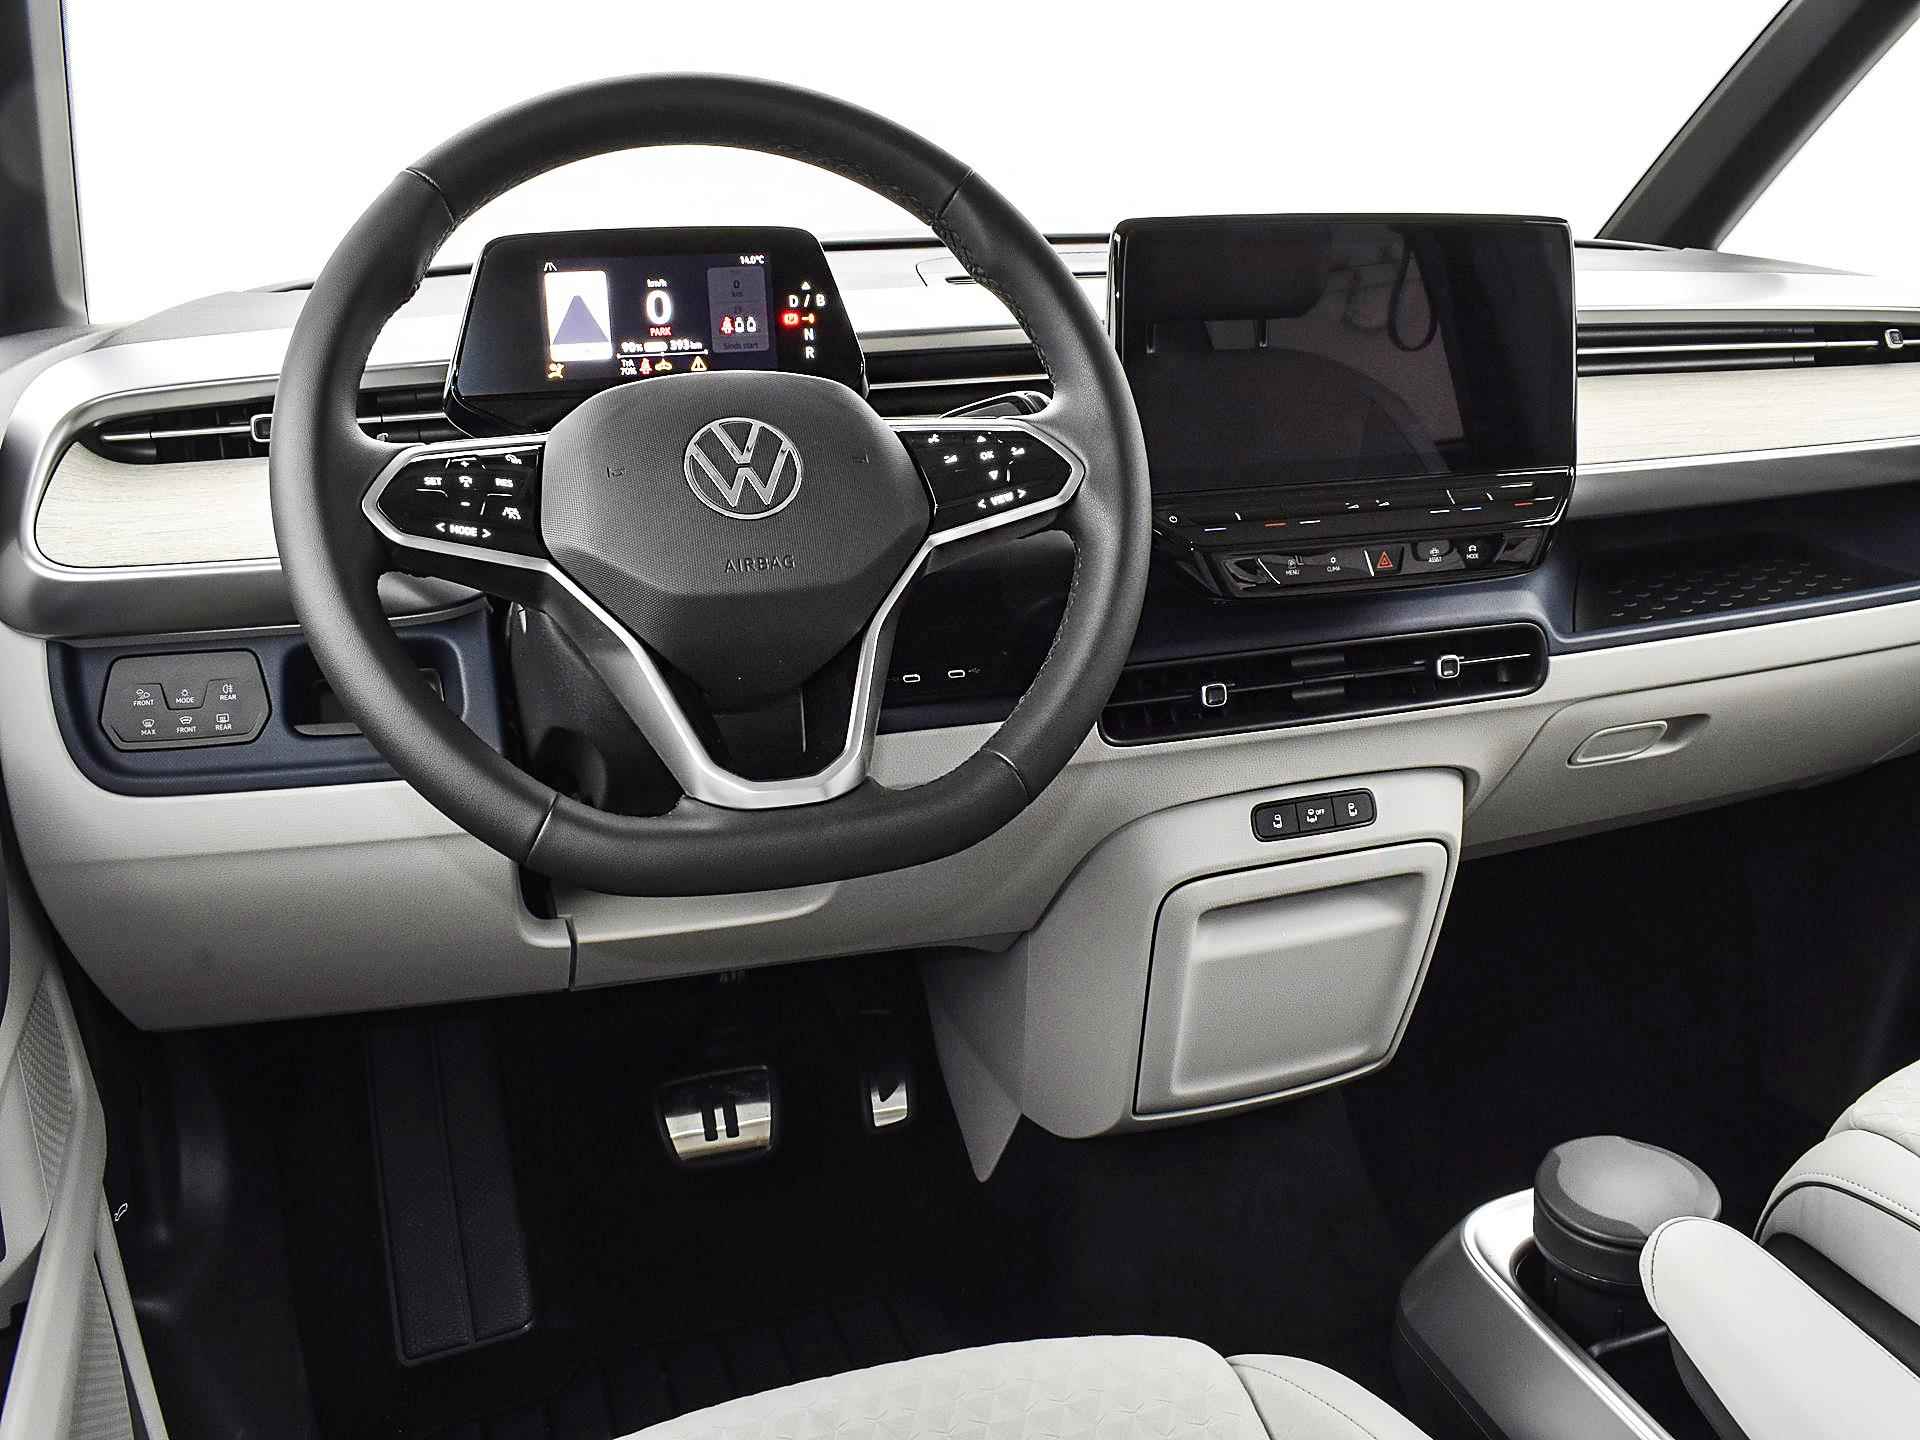 Volkswagen ID. Buzz pro advantage Elektromotor 150 kW / 204 pk electr. aandrijving · Assistance pakket · Design pakket · multimedia pakket plus · open & close pakket plus · trekhaak · MEGA Sale - 16/40